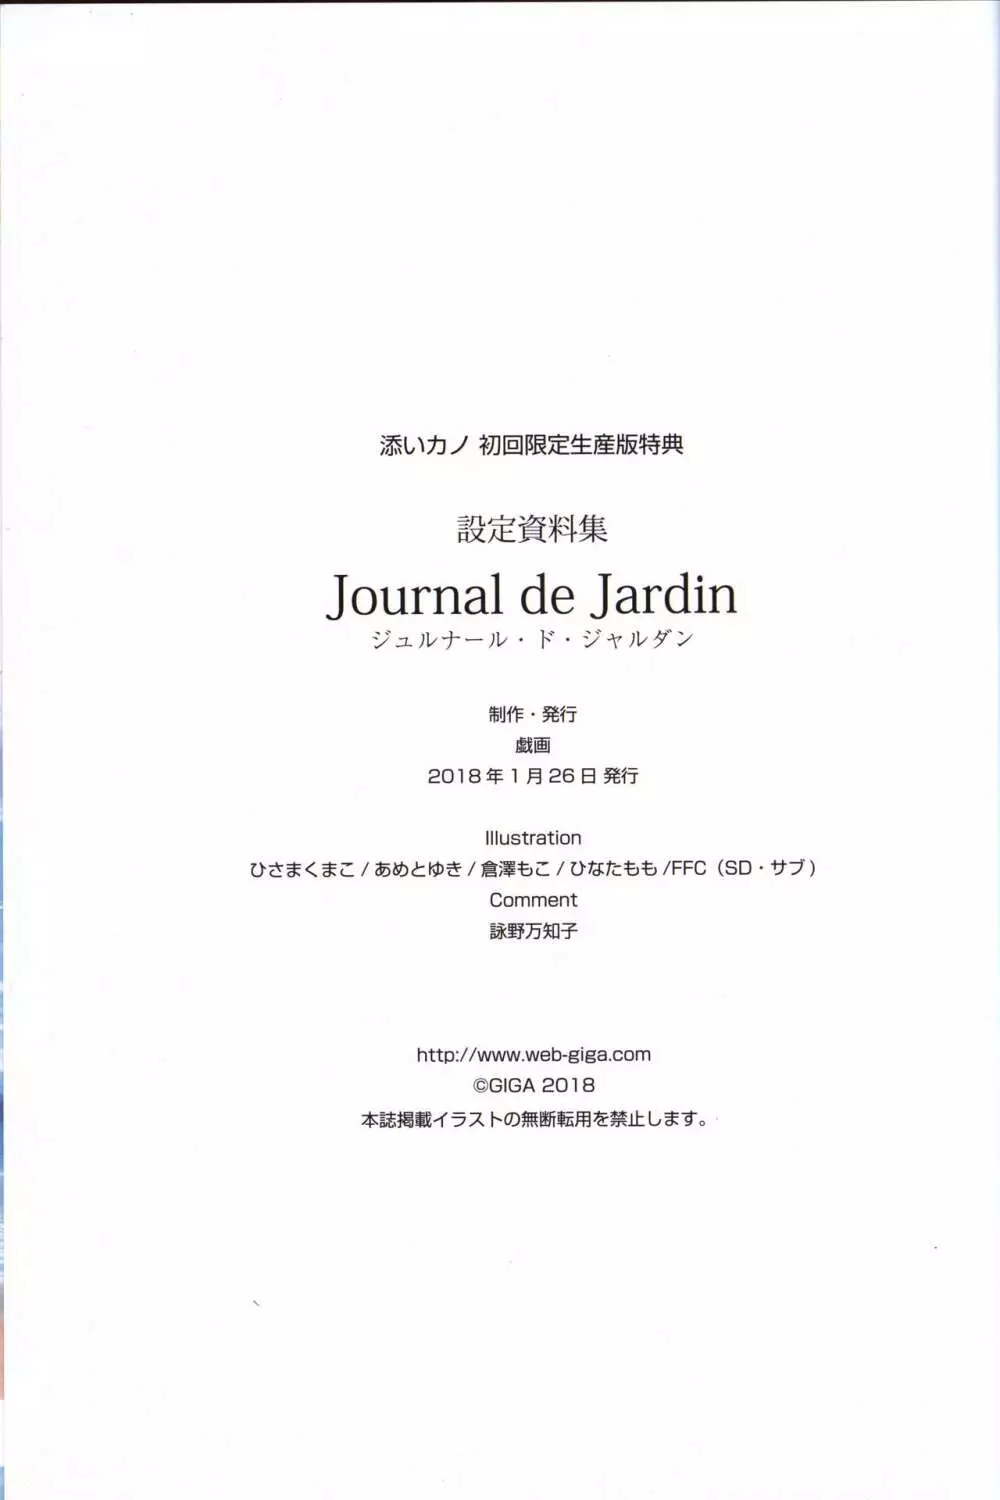 添いカノ 設定資料集 Journal de Jardin ジュルナール・ド・ジャルダン 65ページ